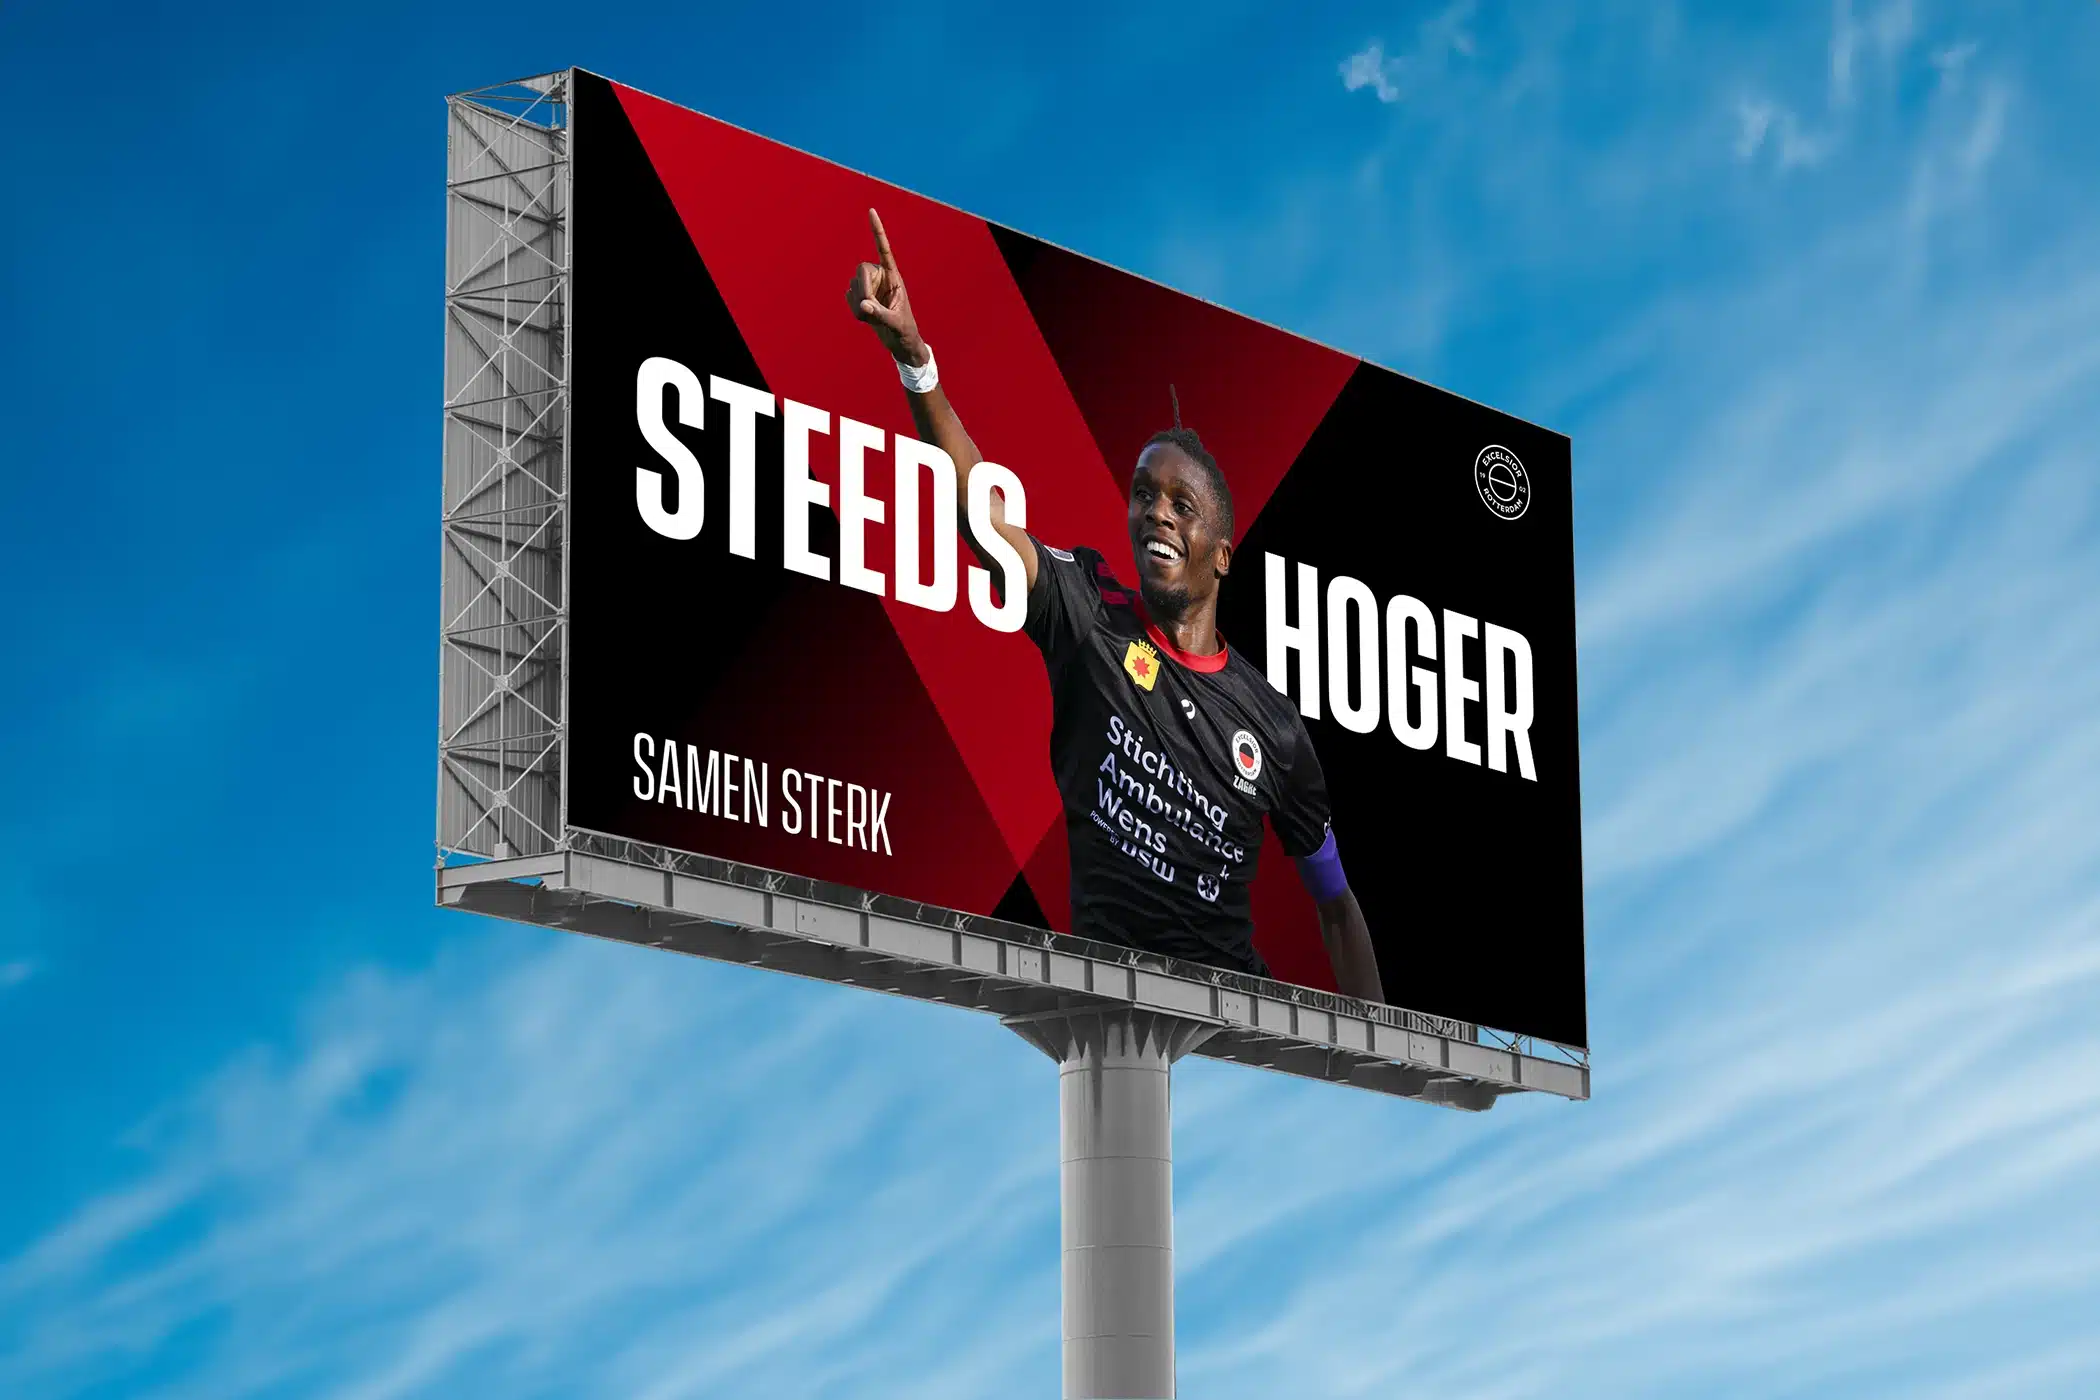 Een groot billboard langs de weg met een afbeelding van een voetballer van Excelsior Rotterdam die juicht, met de tekst "STEEDS HOGER - SAMEN STERK"